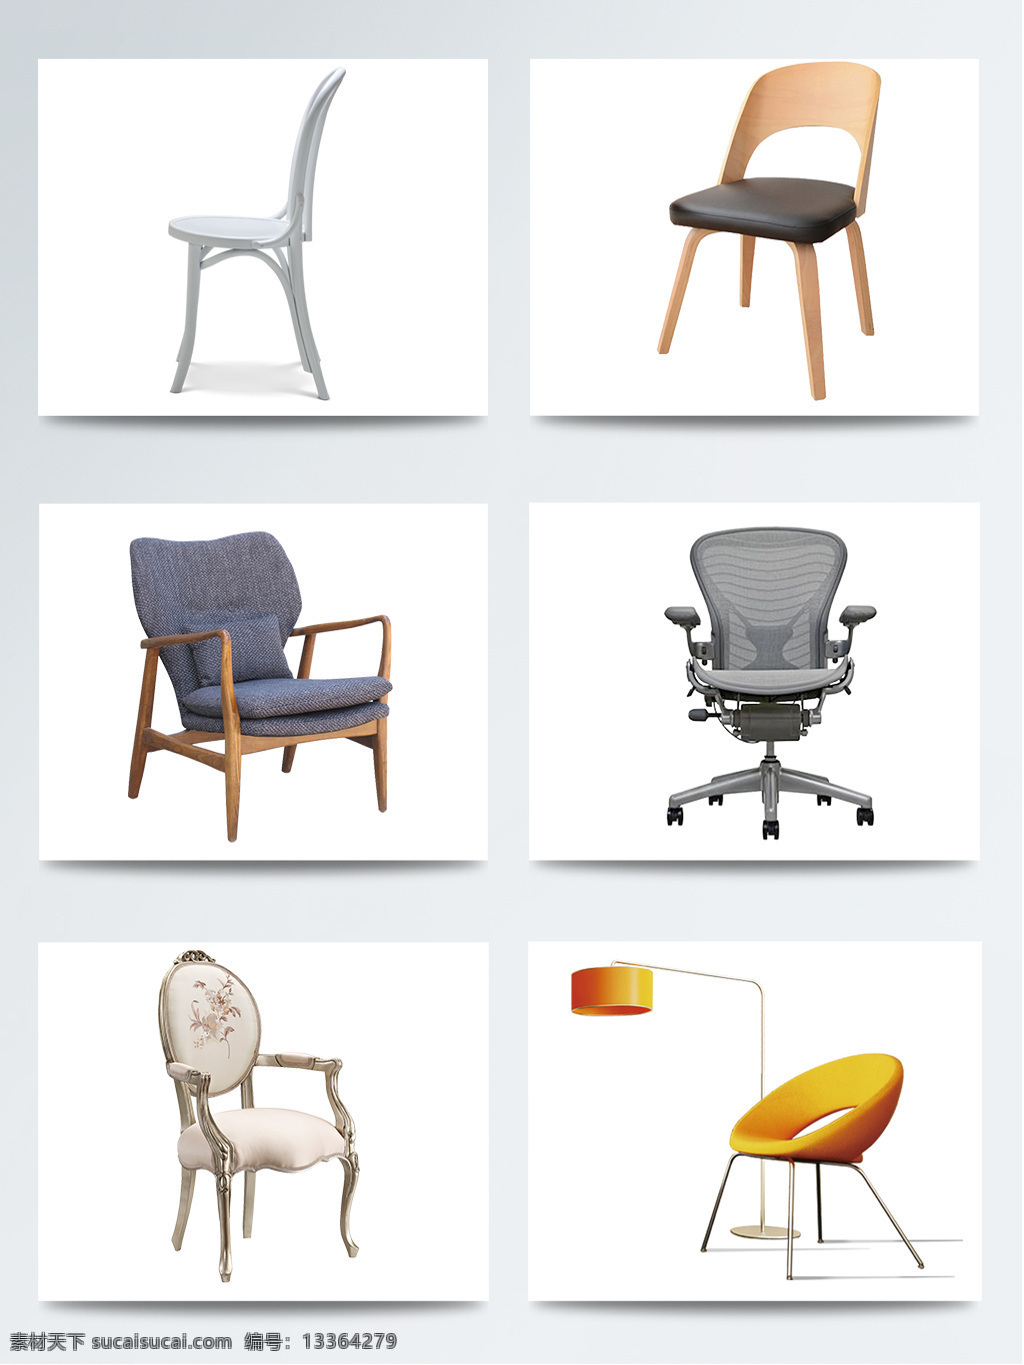 实物 椅子 时尚 简约 产品设计 创意 凳子 家居 家装 家装节 简约沙发 生活椅子 新年惠 用品